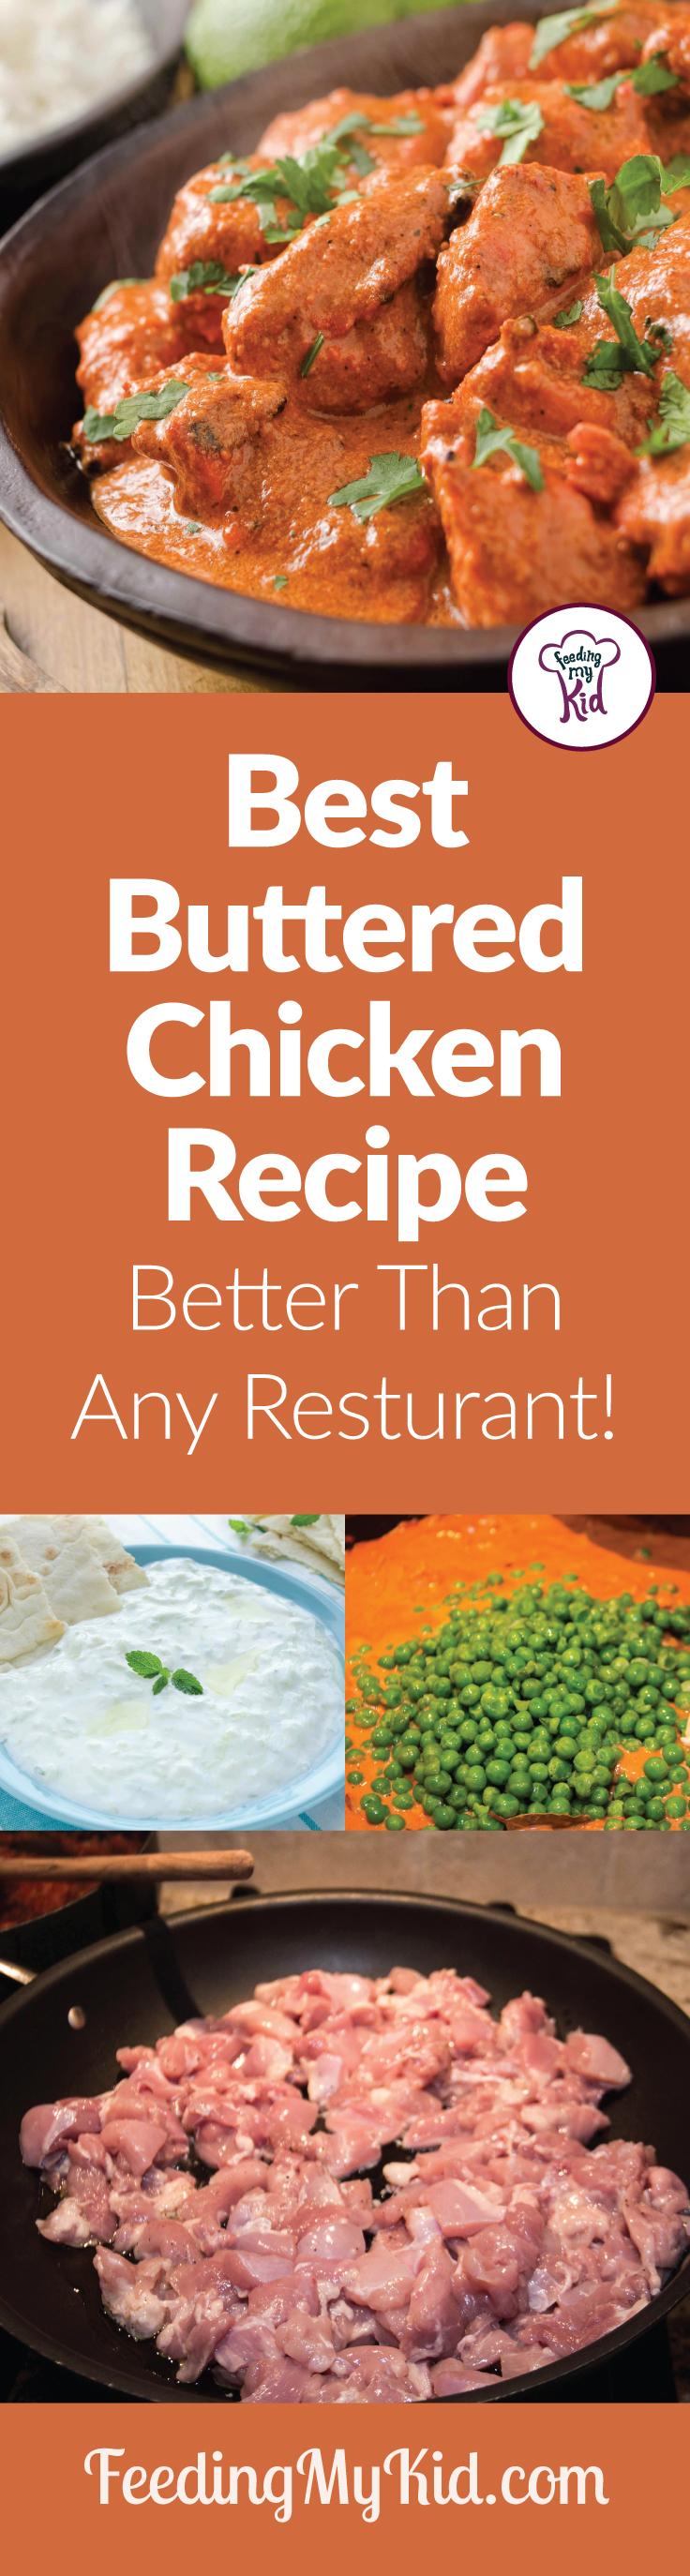 Best Buttered Chicken Recipe